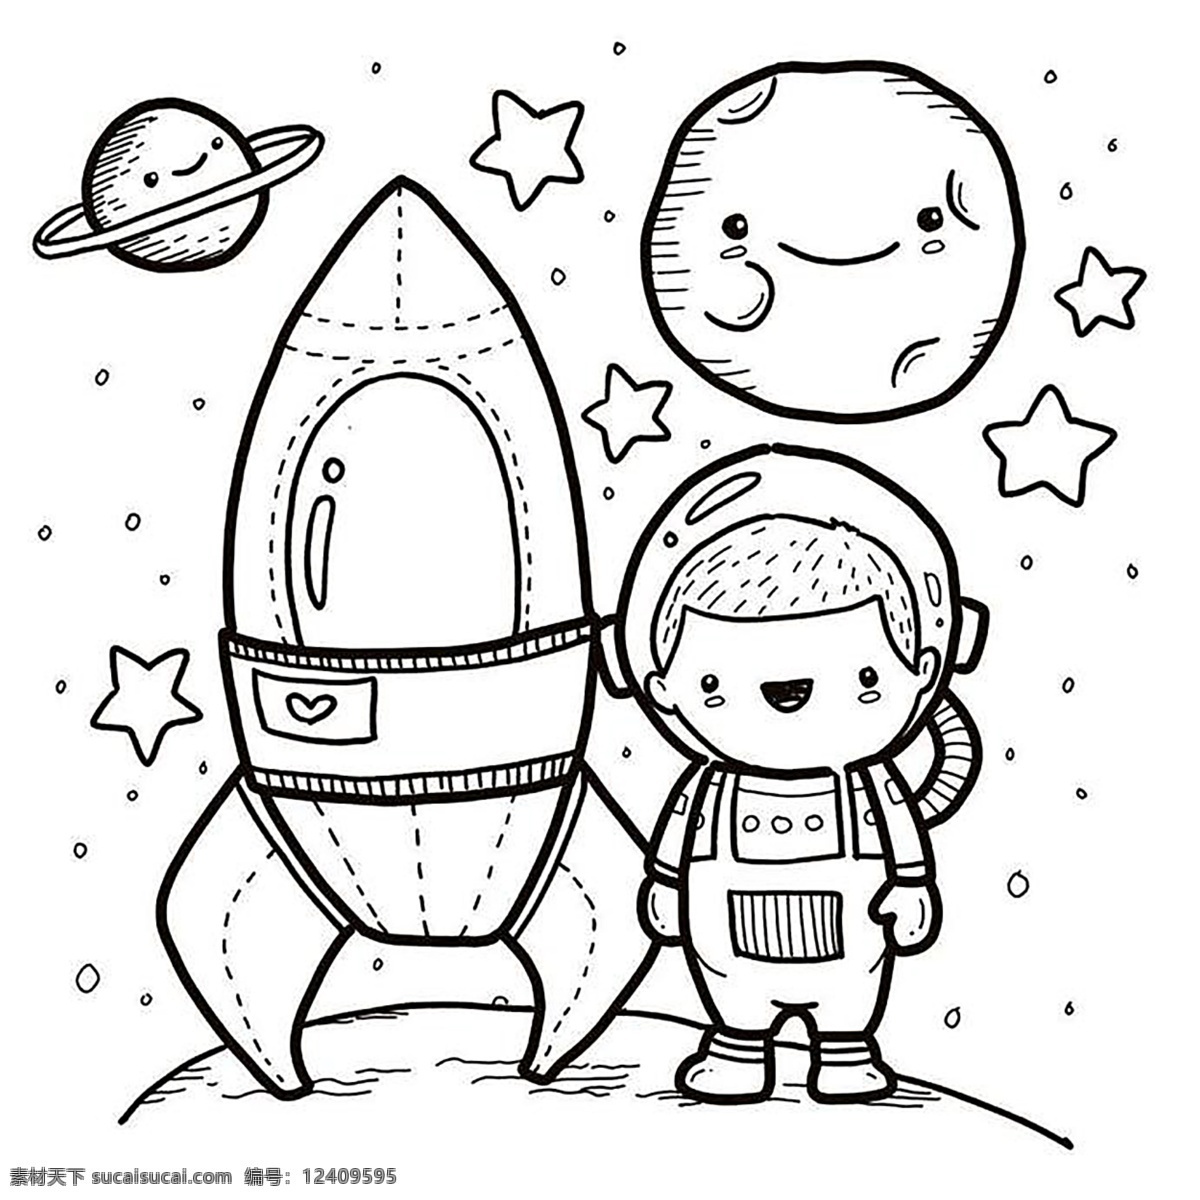 简笔 涂色 宇航员 少儿 航天 人物 背景 生活百科 ps 动漫动画 风景漫画